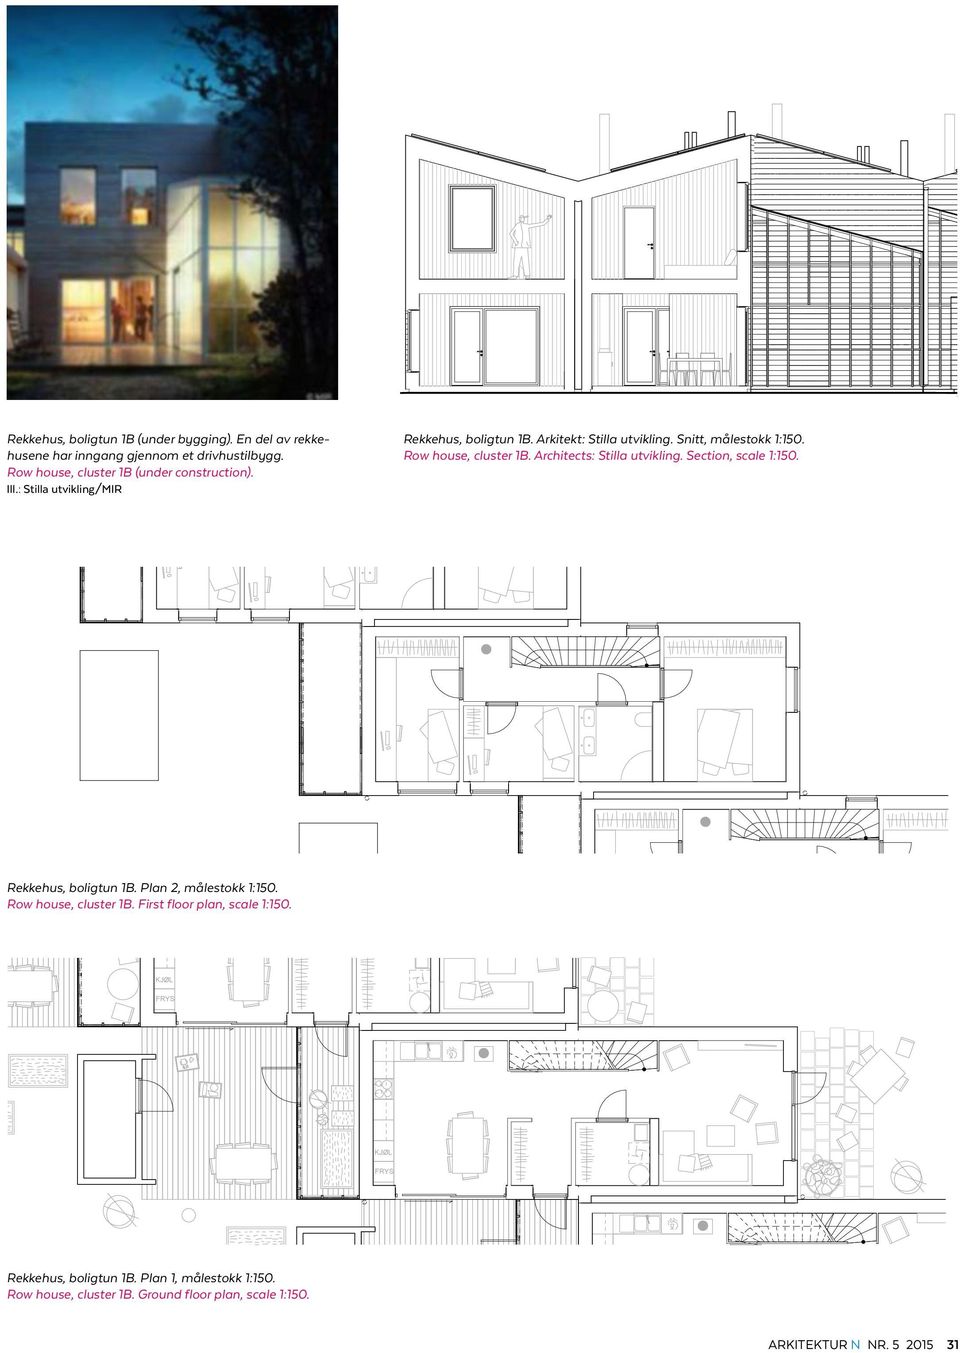 Architects: Stilla utvikling. Section, scale 1:150. Rekkehus, boligtun 1B. Plan 2, målestokk 1:150. Row house, cluster 1B.